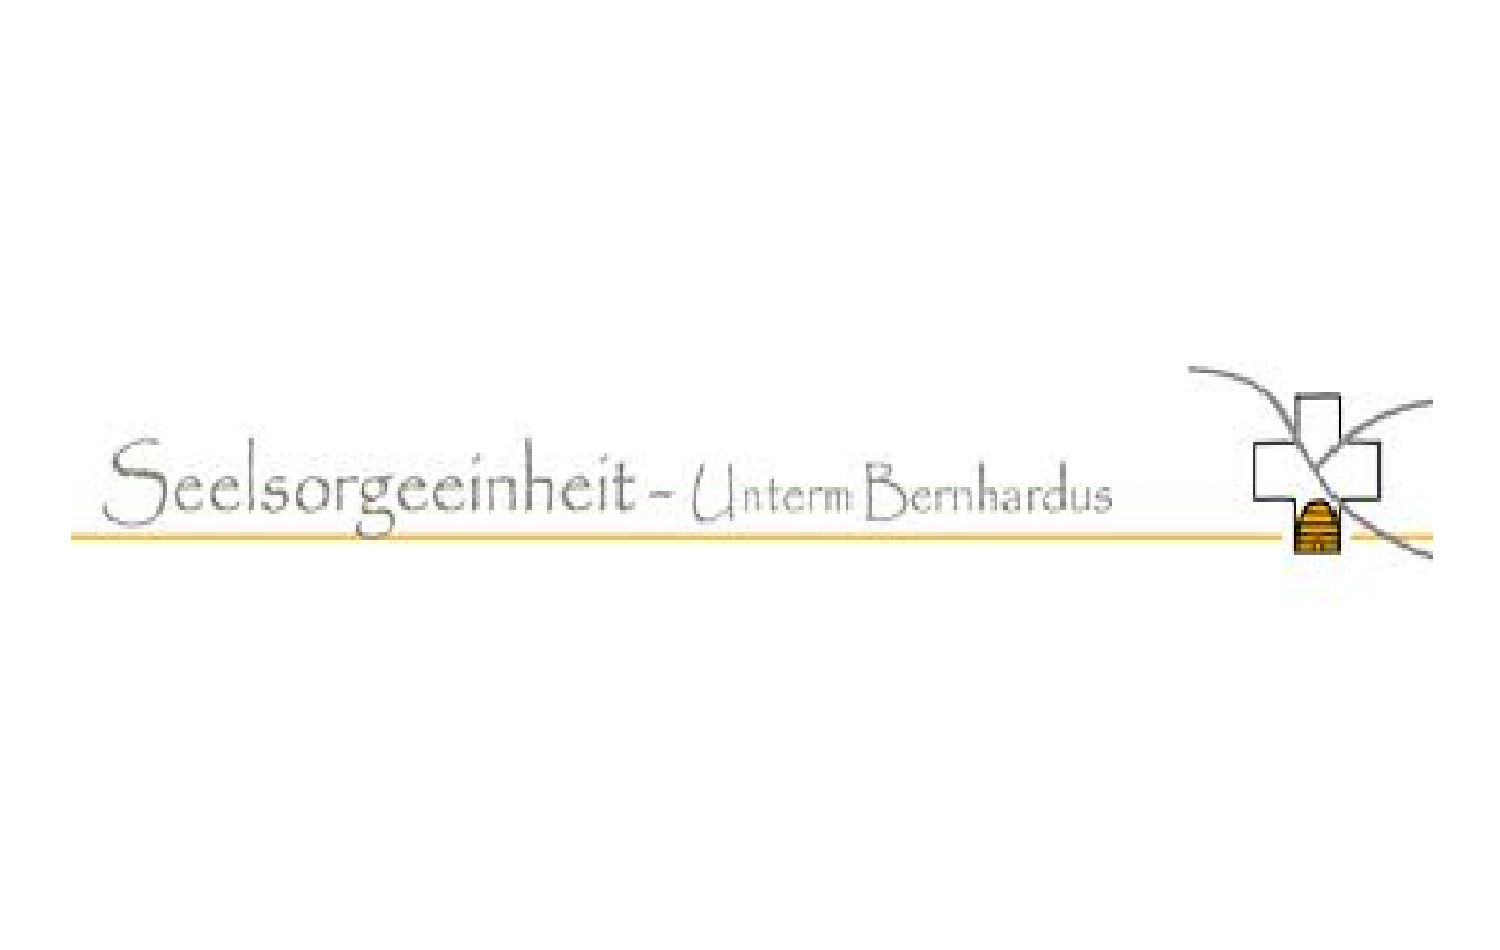 Seelsorgeeinheit 19 - Unterm Bernhardus